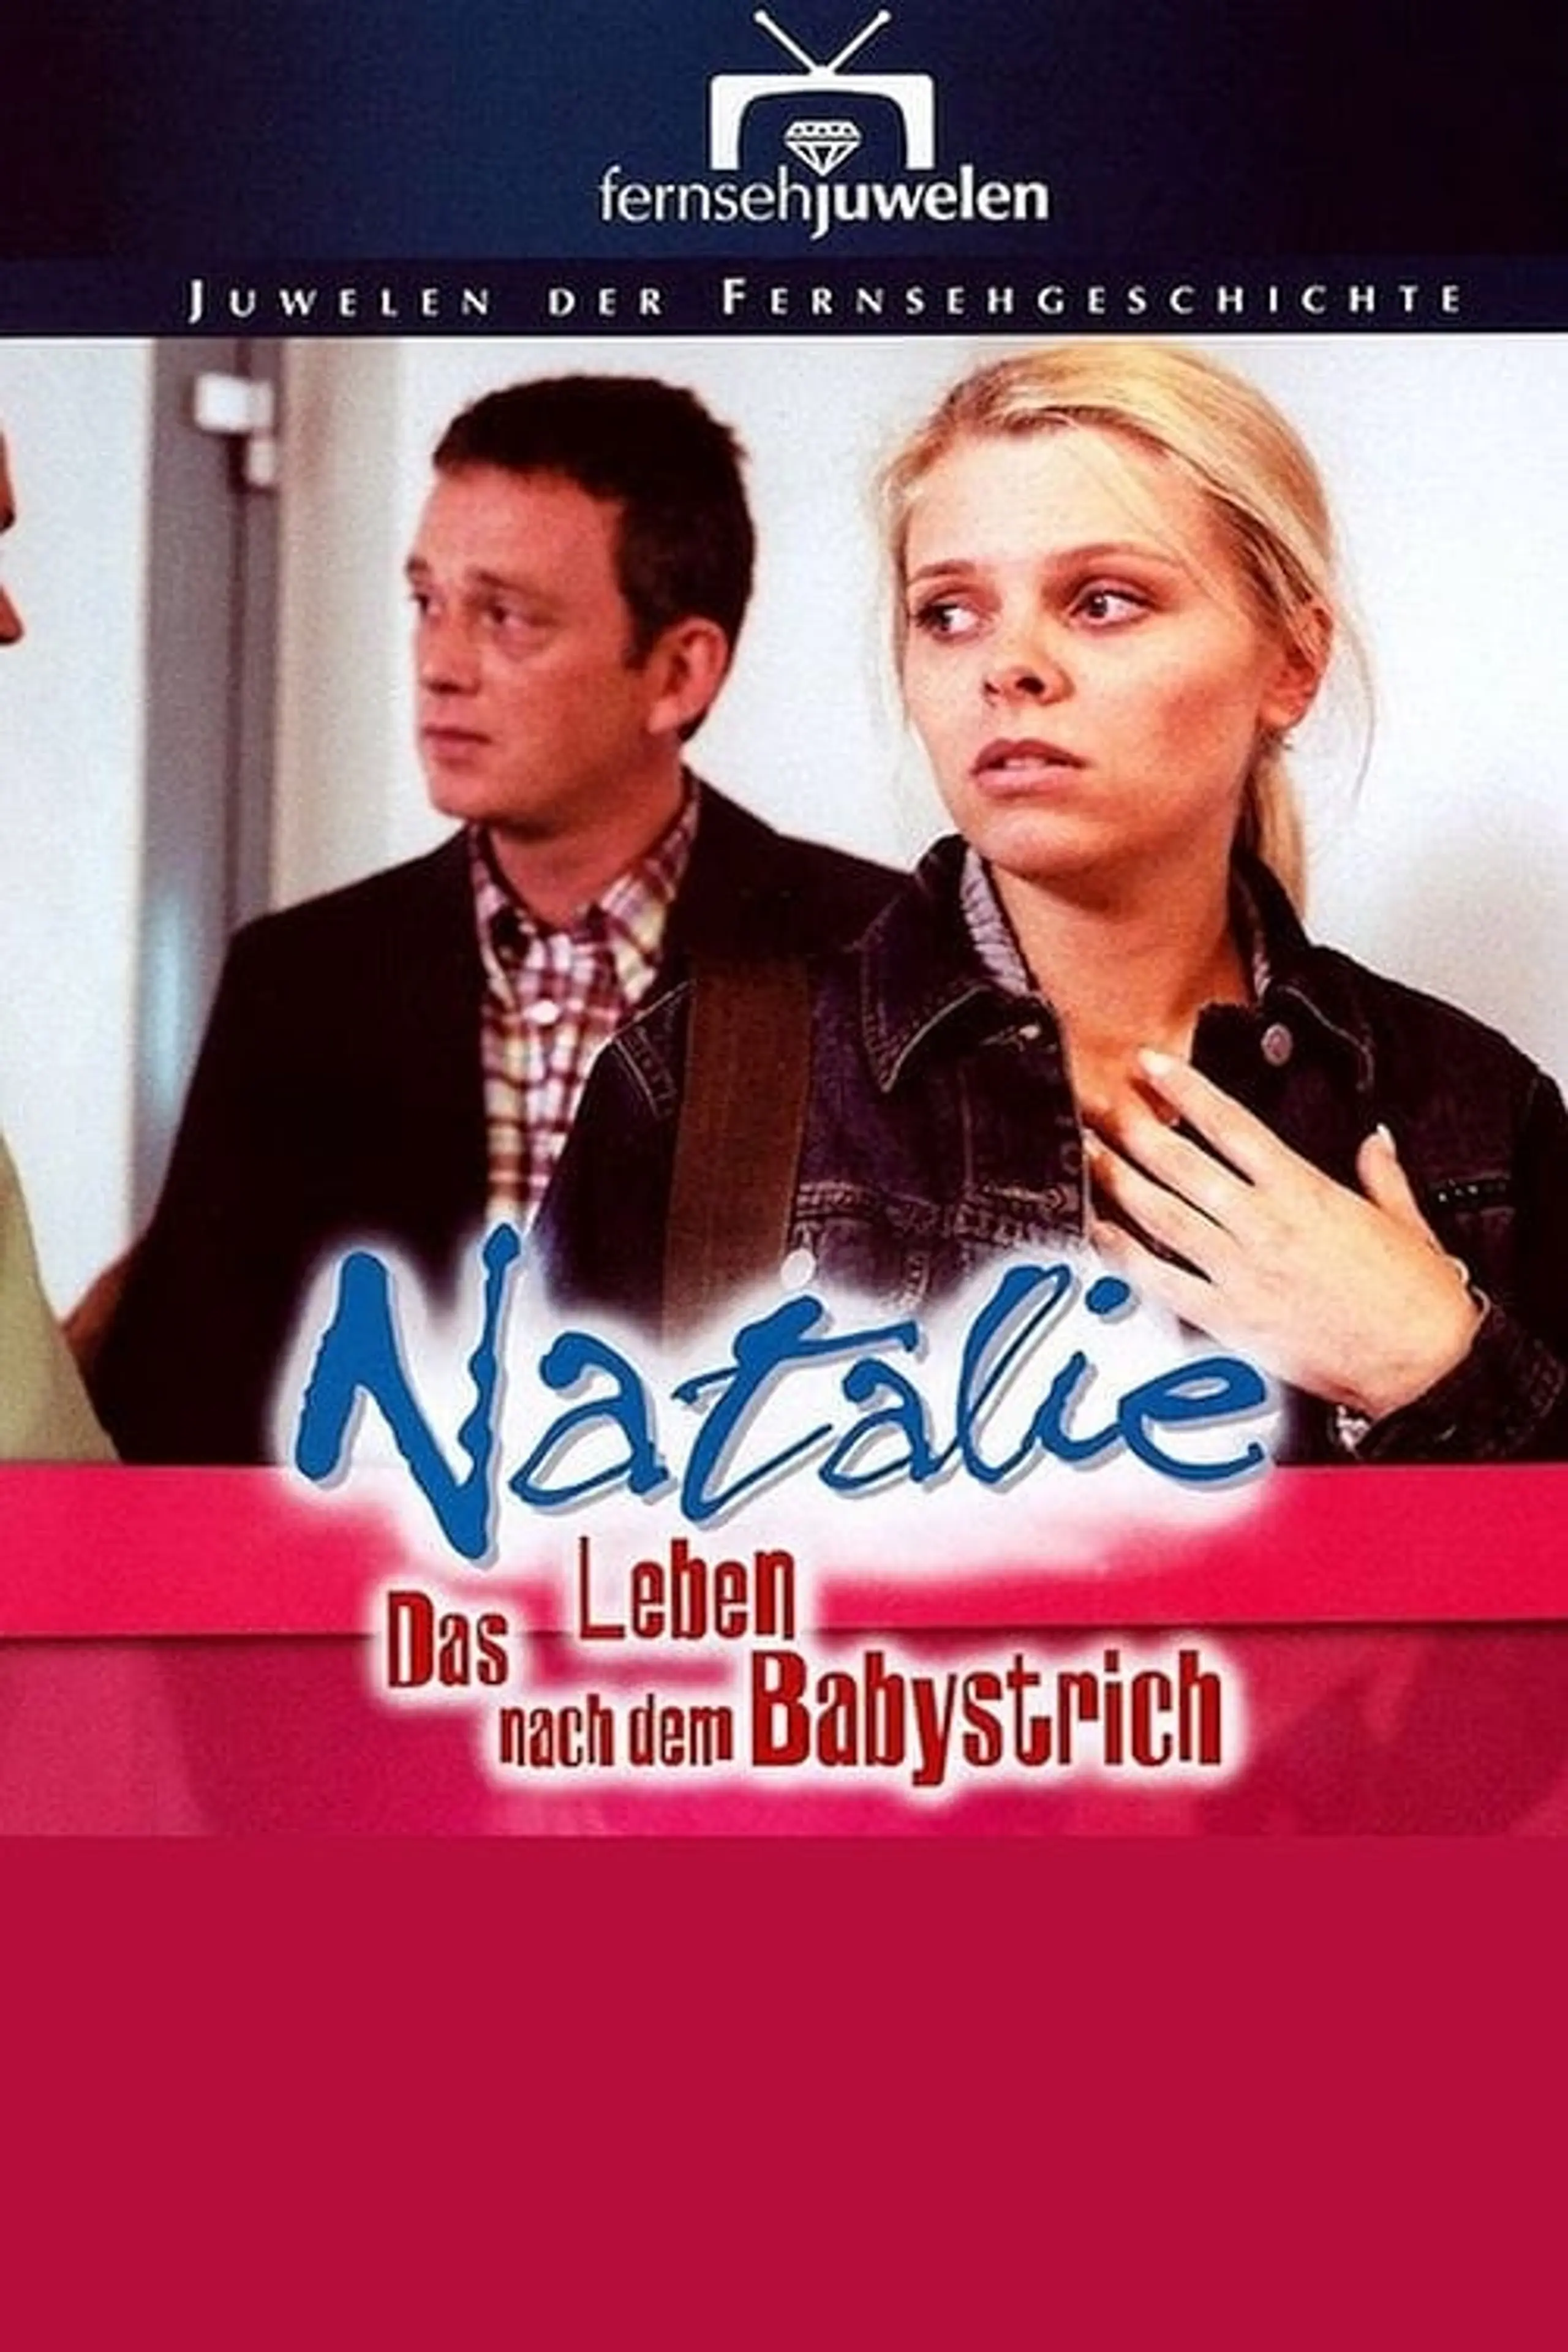 Natalie IV - Das Leben nach dem Babystrich